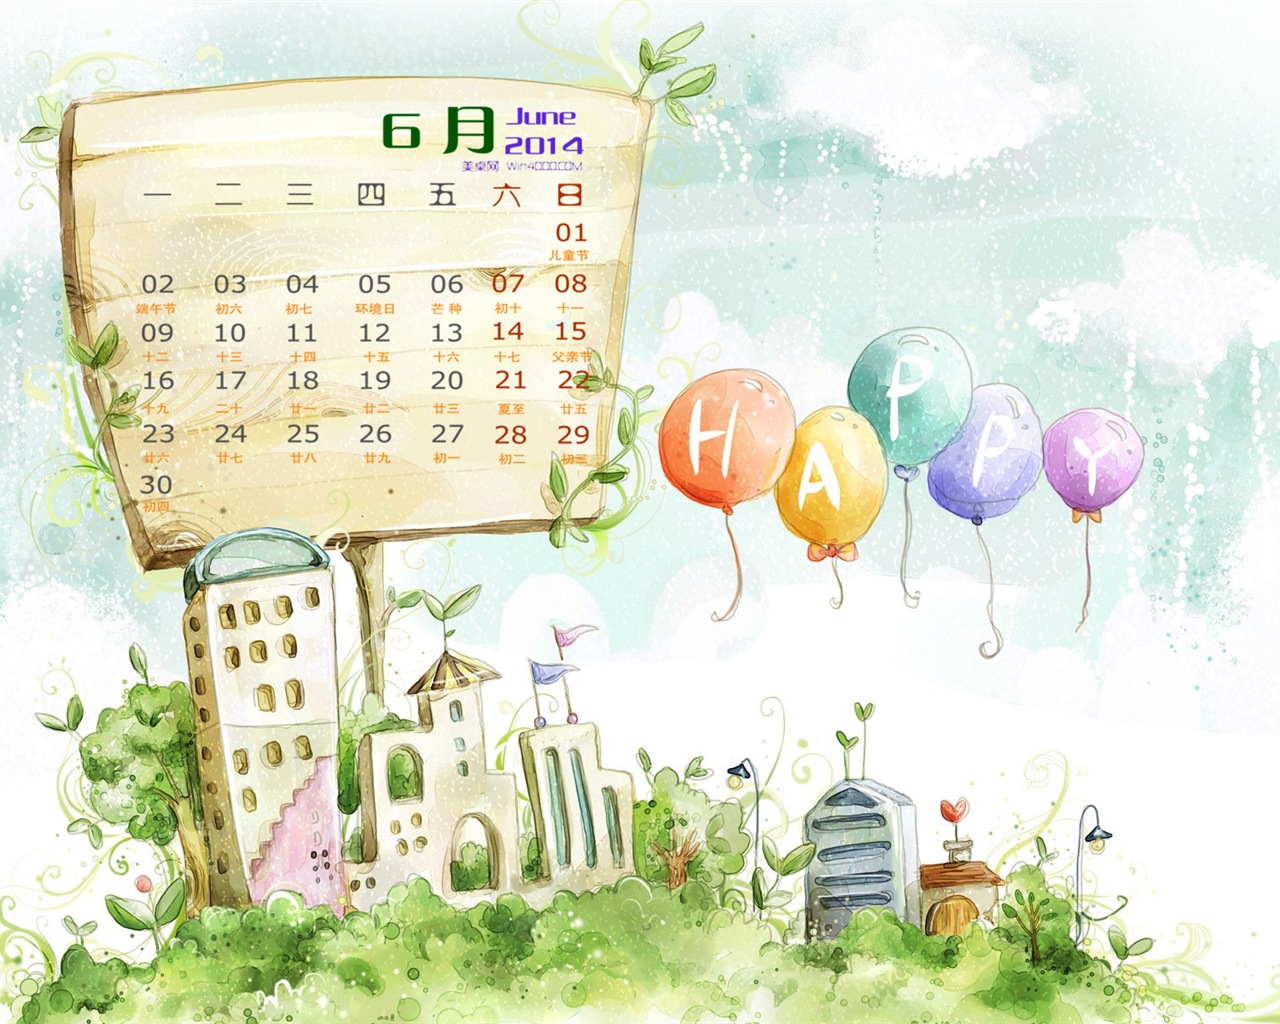 Июнь 2014 календарь обои (1) #11 - 1280x1024